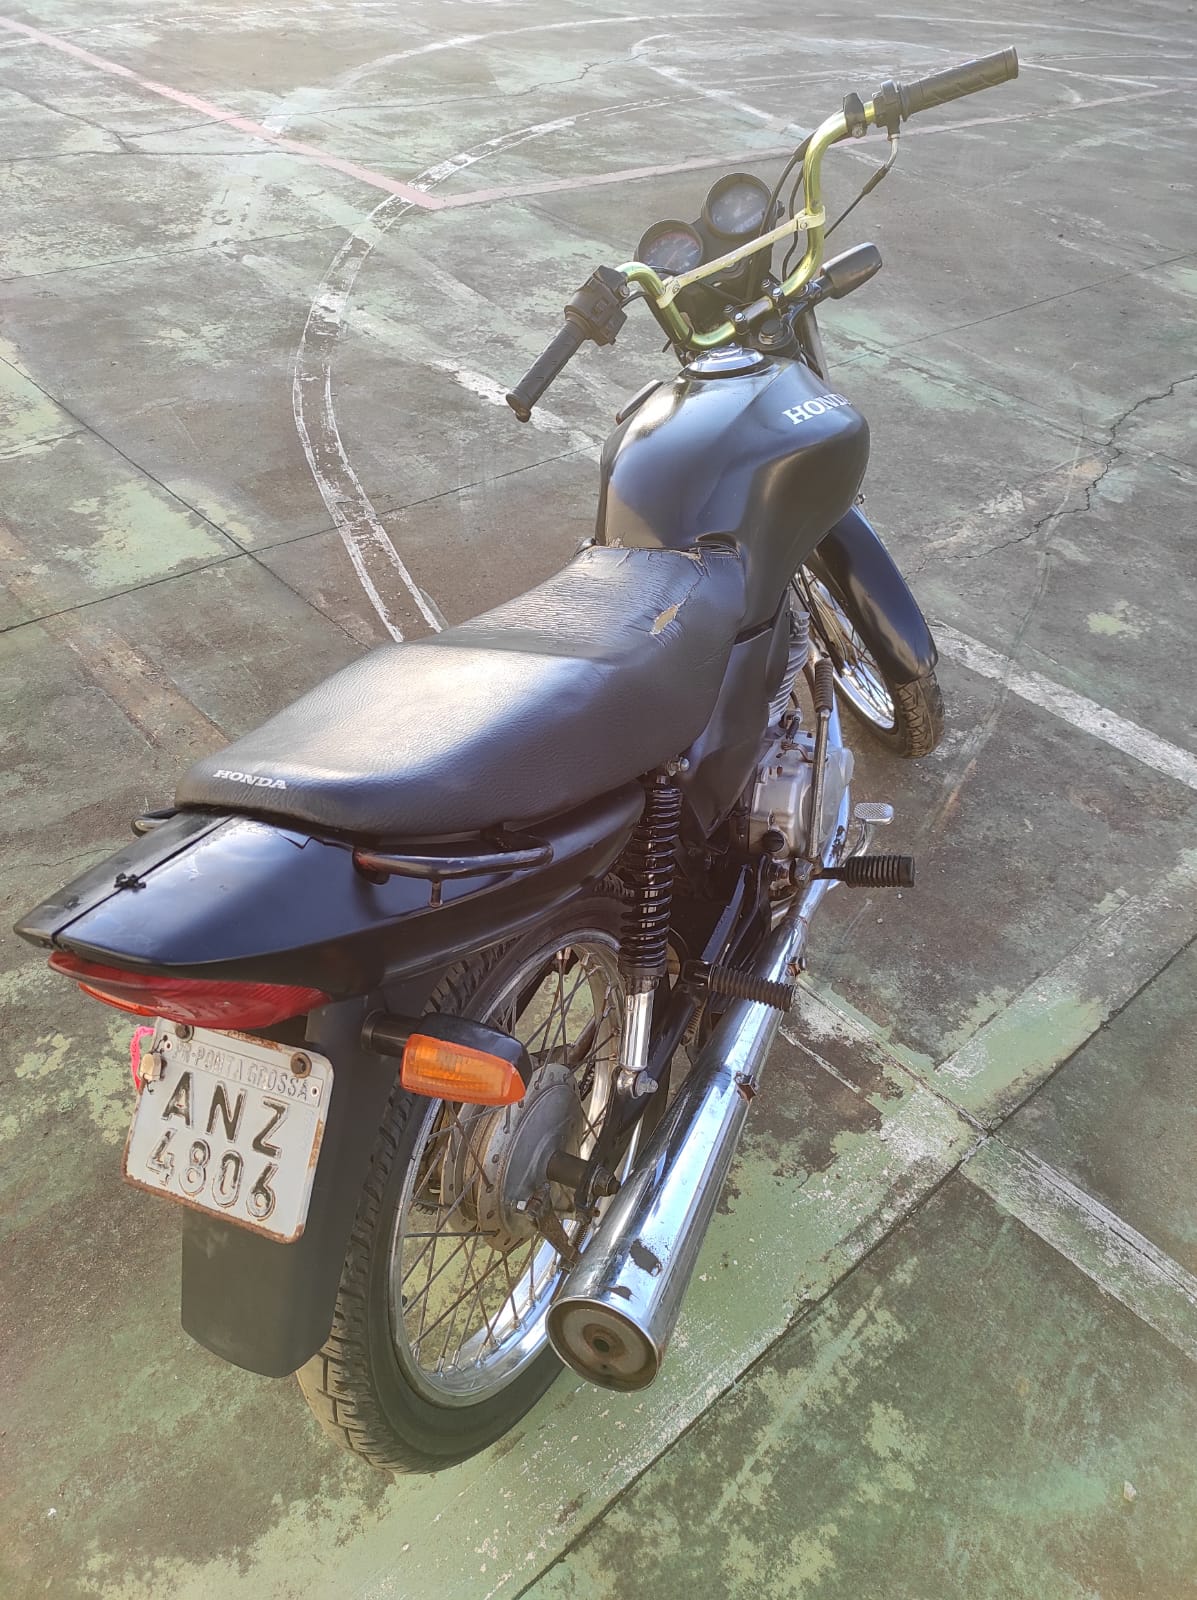 Civil recupera motocicleta furtada em Piraí do Sul